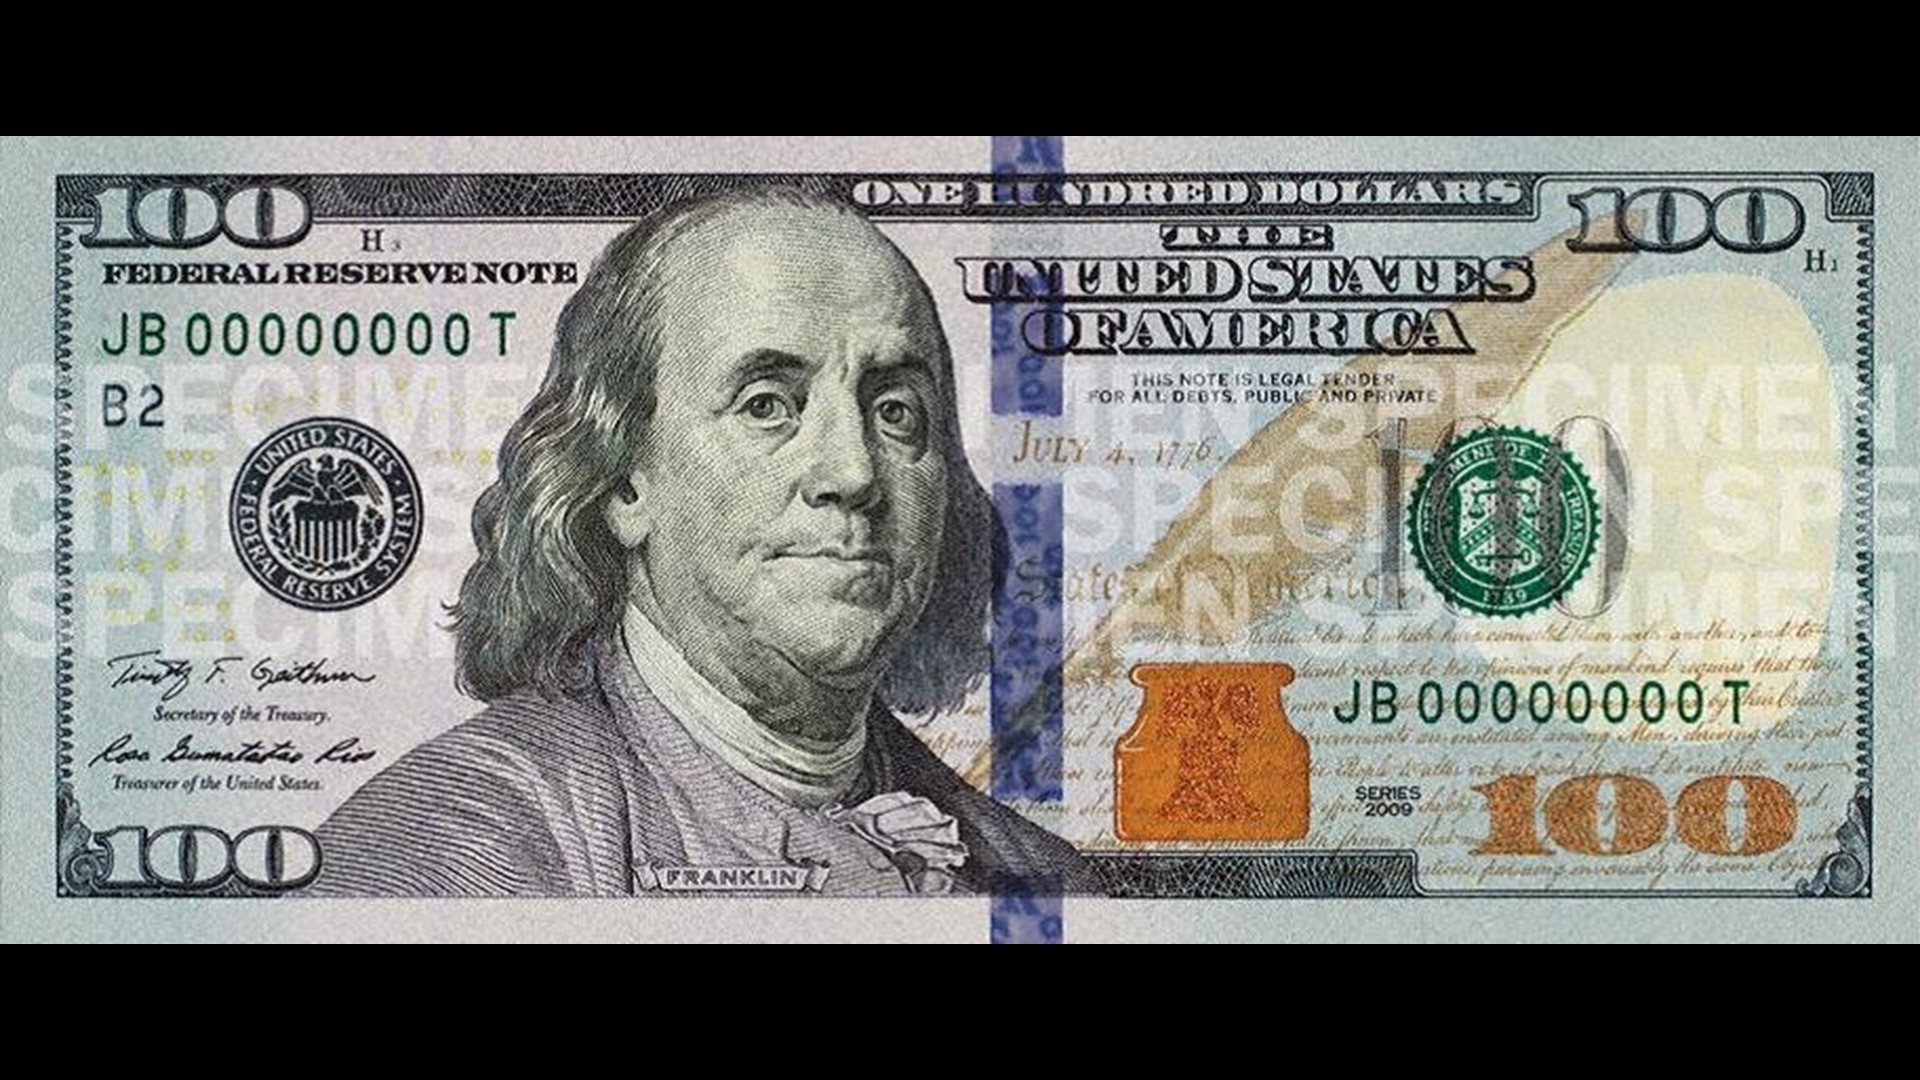 New 100 bill debuts